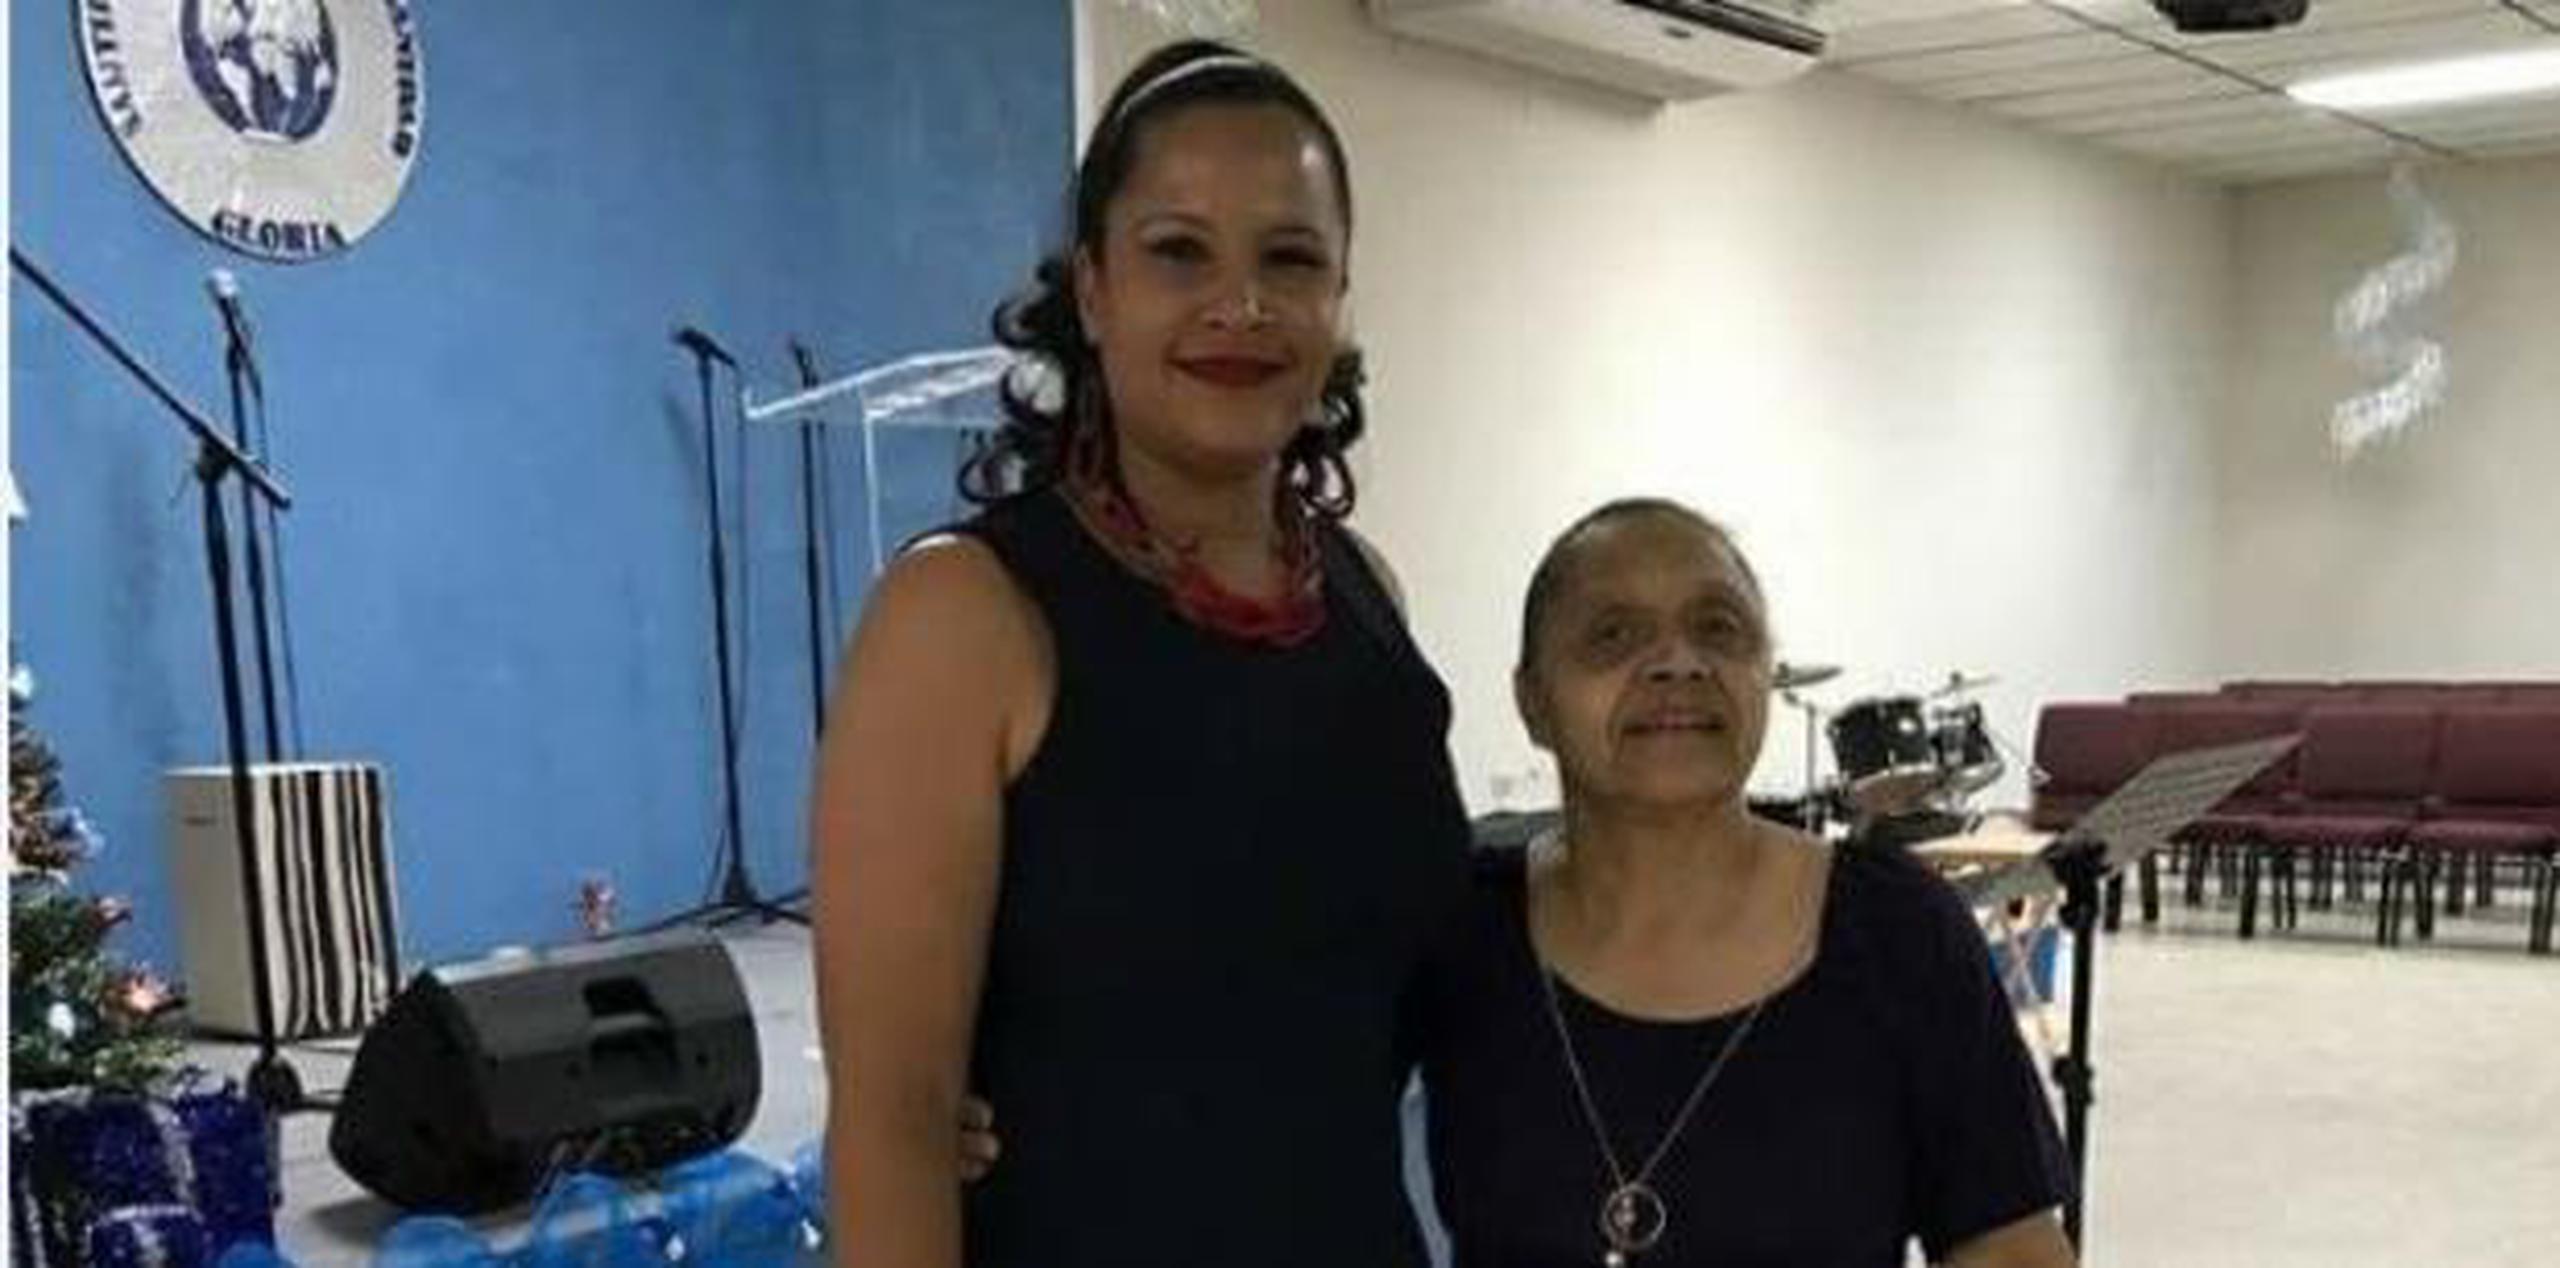 Darlene Rivera Roldán vio cómo durante tres meses su madre se deterioró. Fue un cambio del cielo a la tierra, según describe. (Suministrada)